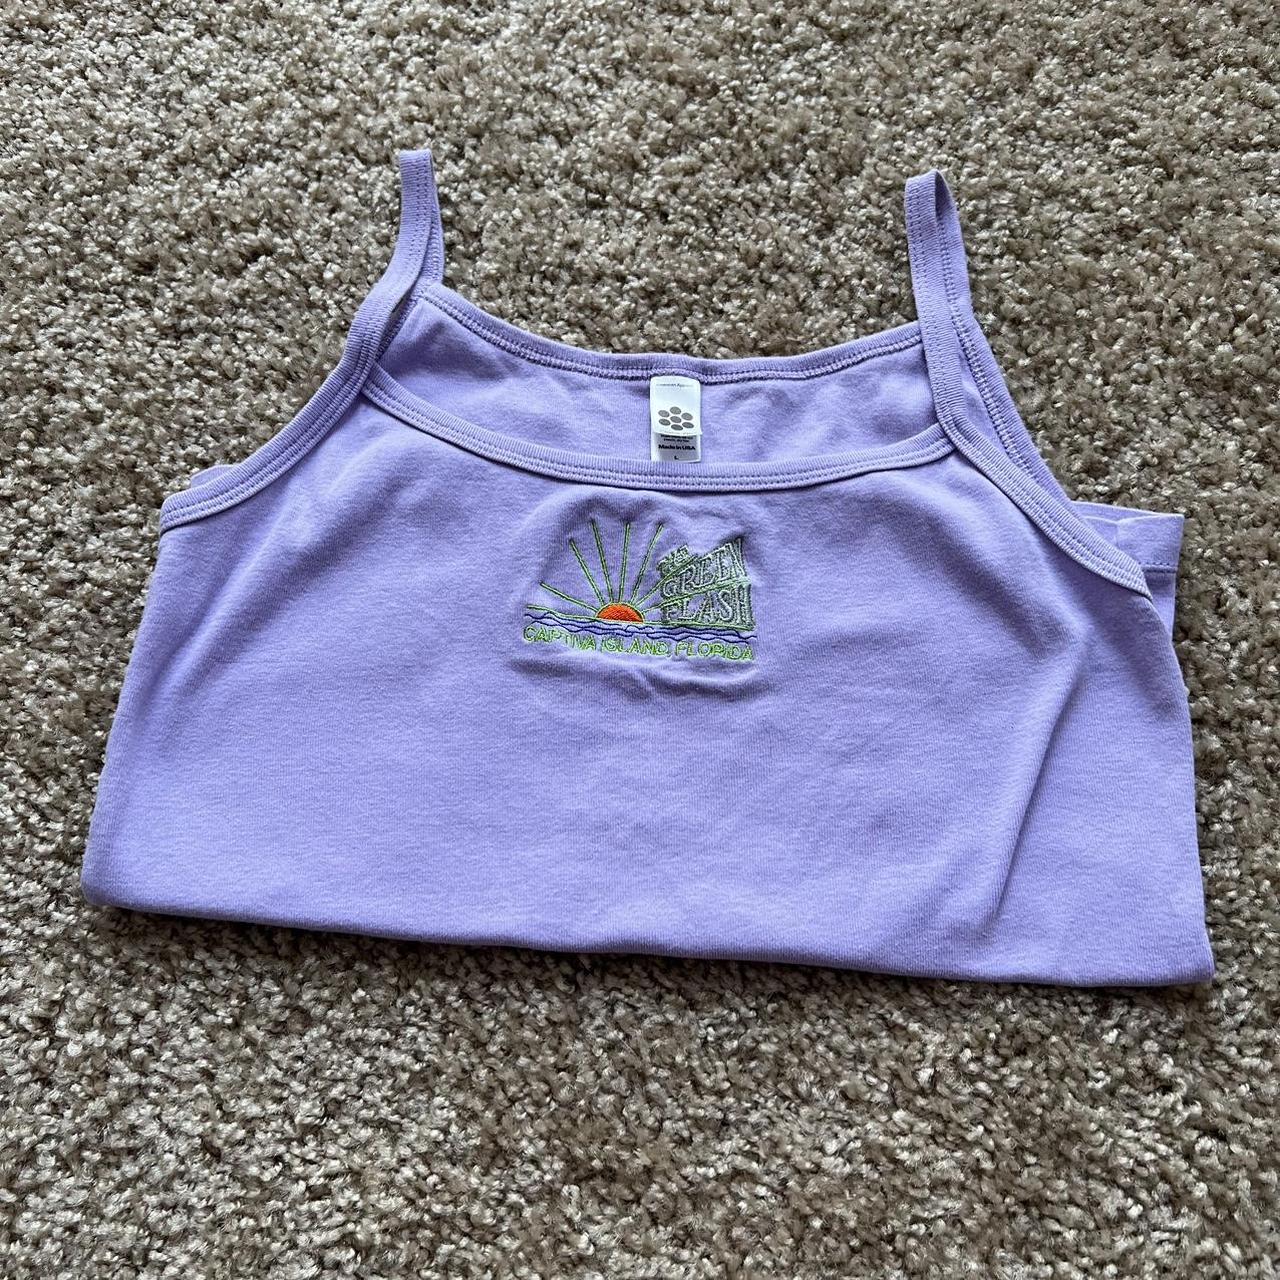 American Apparel Women's Purple Top